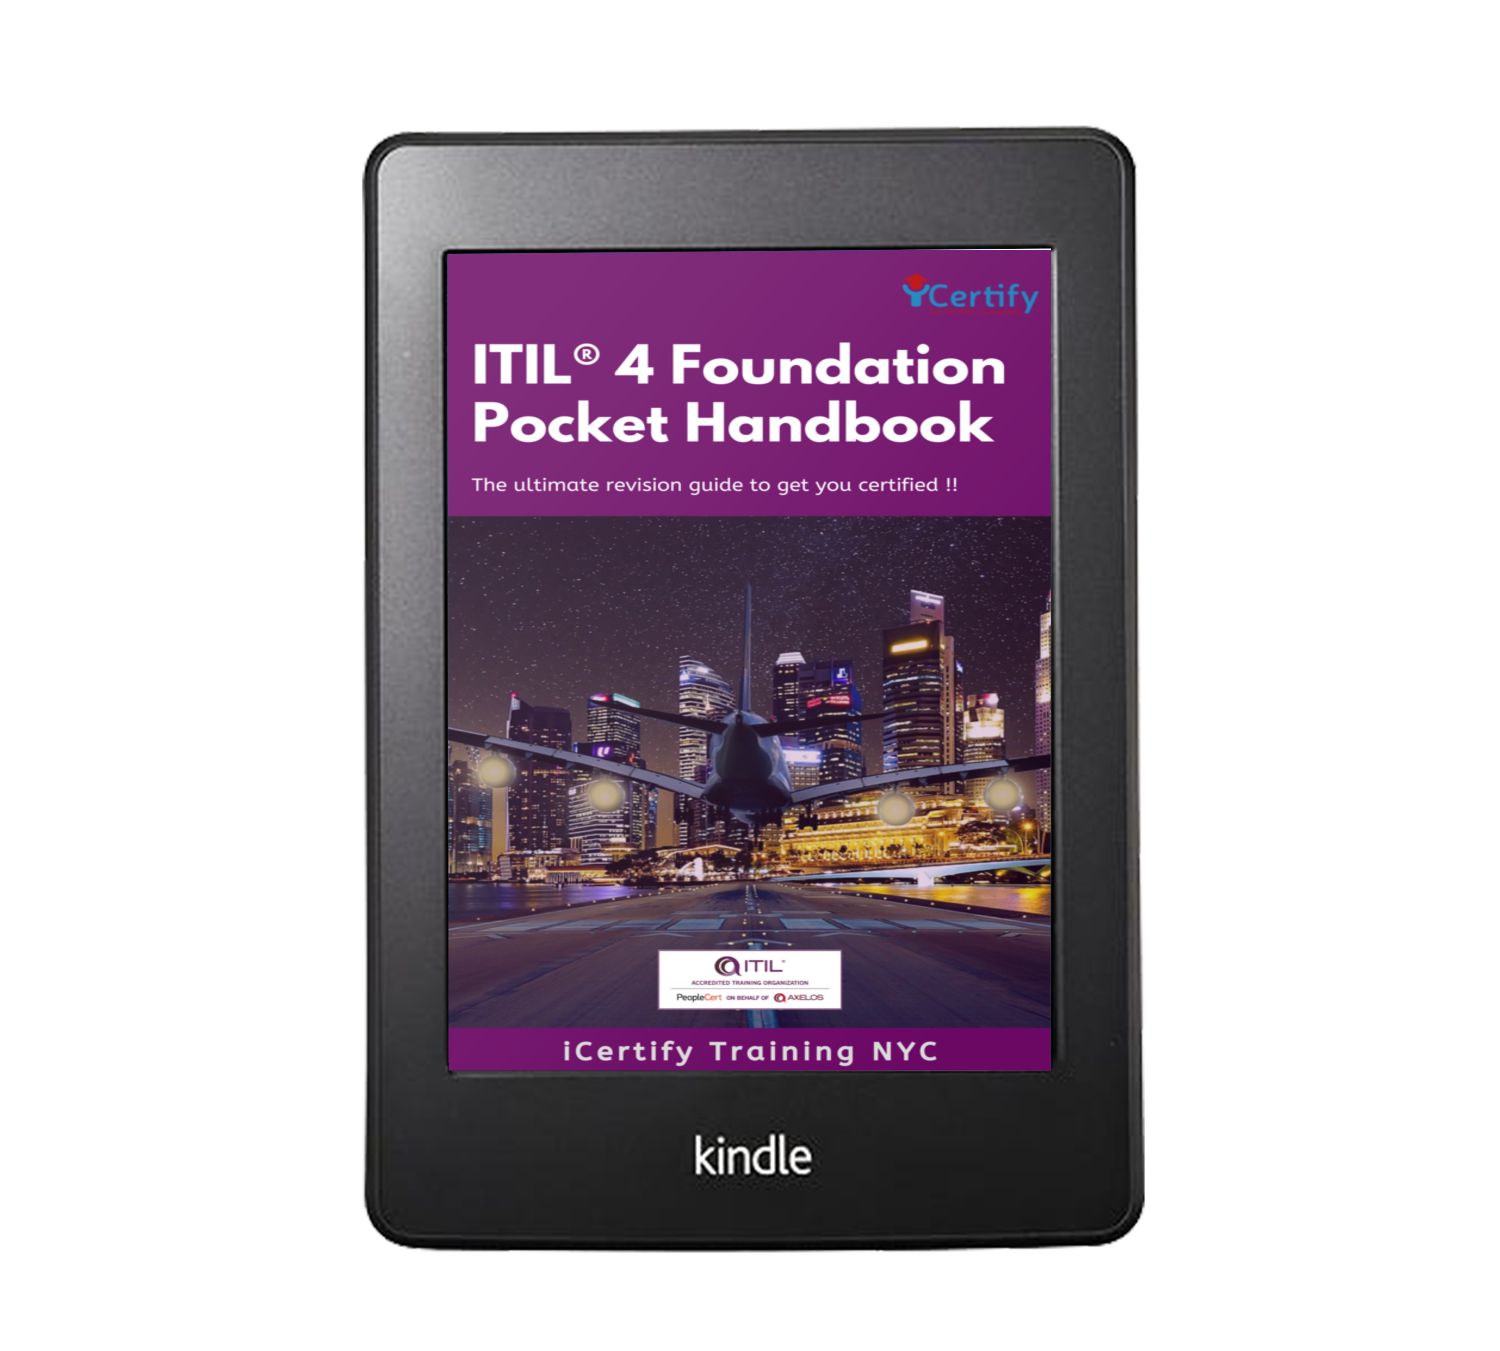 Download ITIL Pocket Handbook kindle 3d mockup - iCertify Training